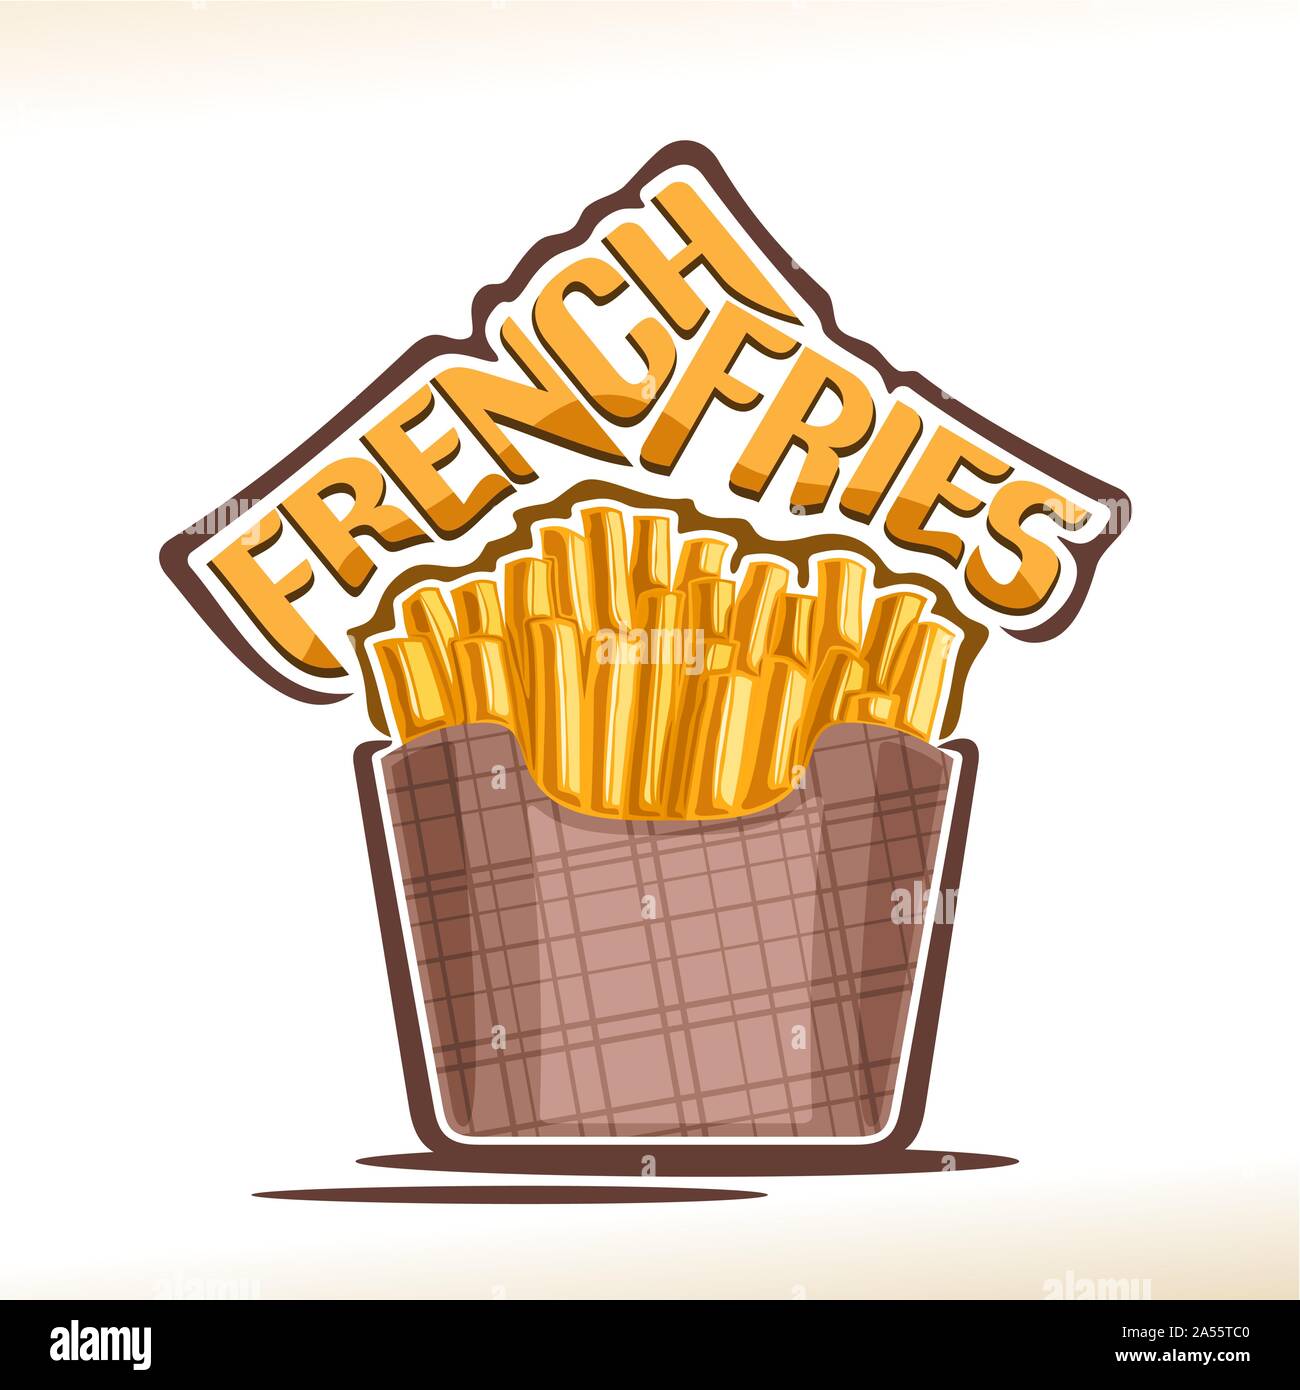 Il logo del vettore per patatine fritte, poster con fritti croccanti bastoncini di patata in marrone pack, carattere tipografico originale per parole fritte, isolati o illustrazione Illustrazione Vettoriale